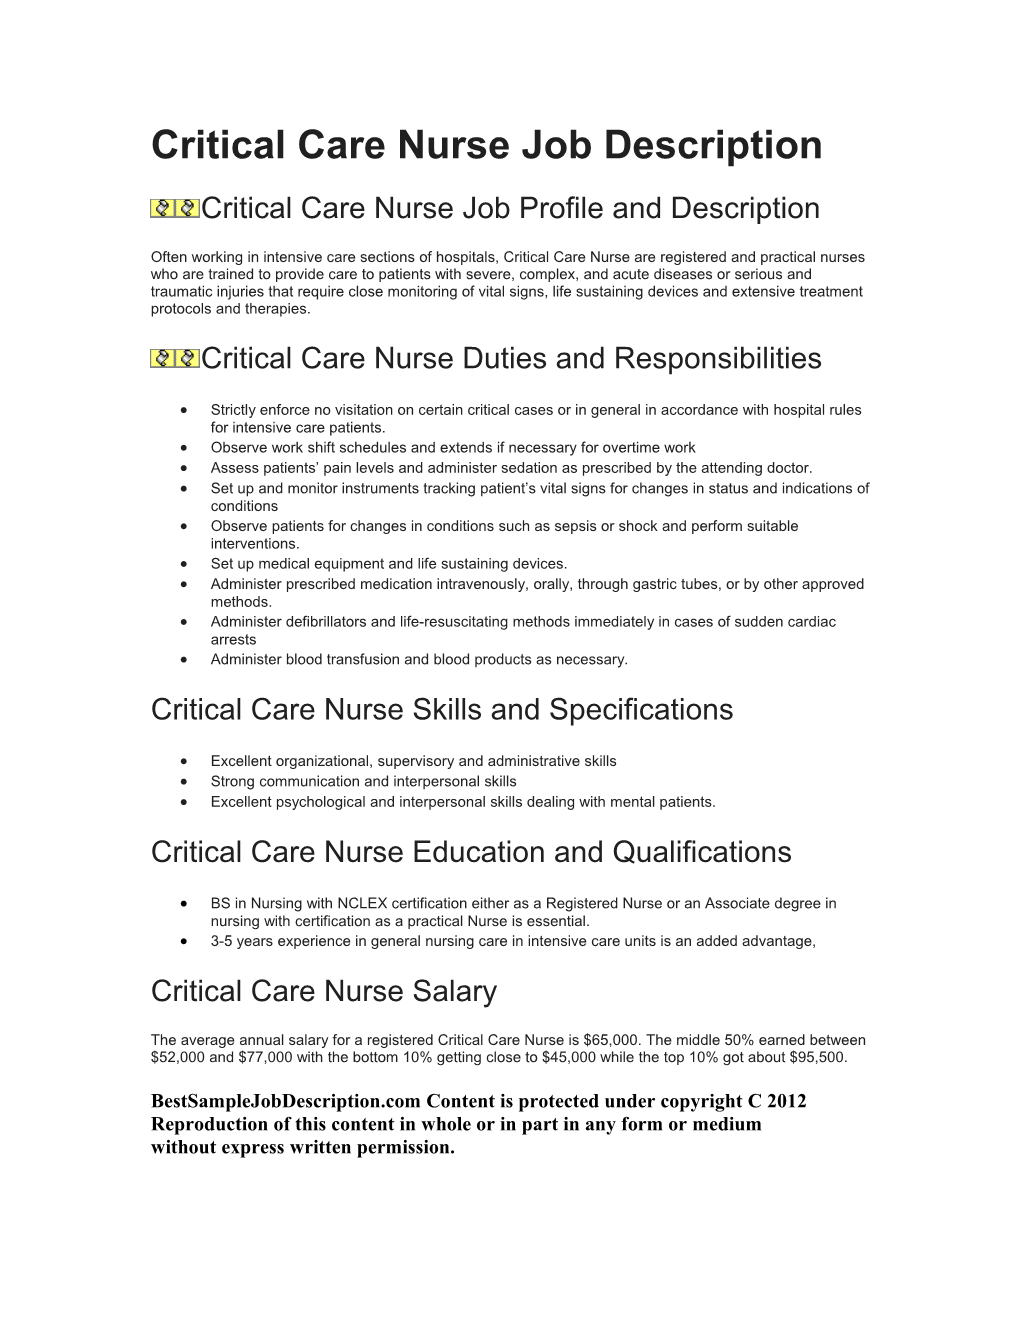 Critical Care Nurse Job Description